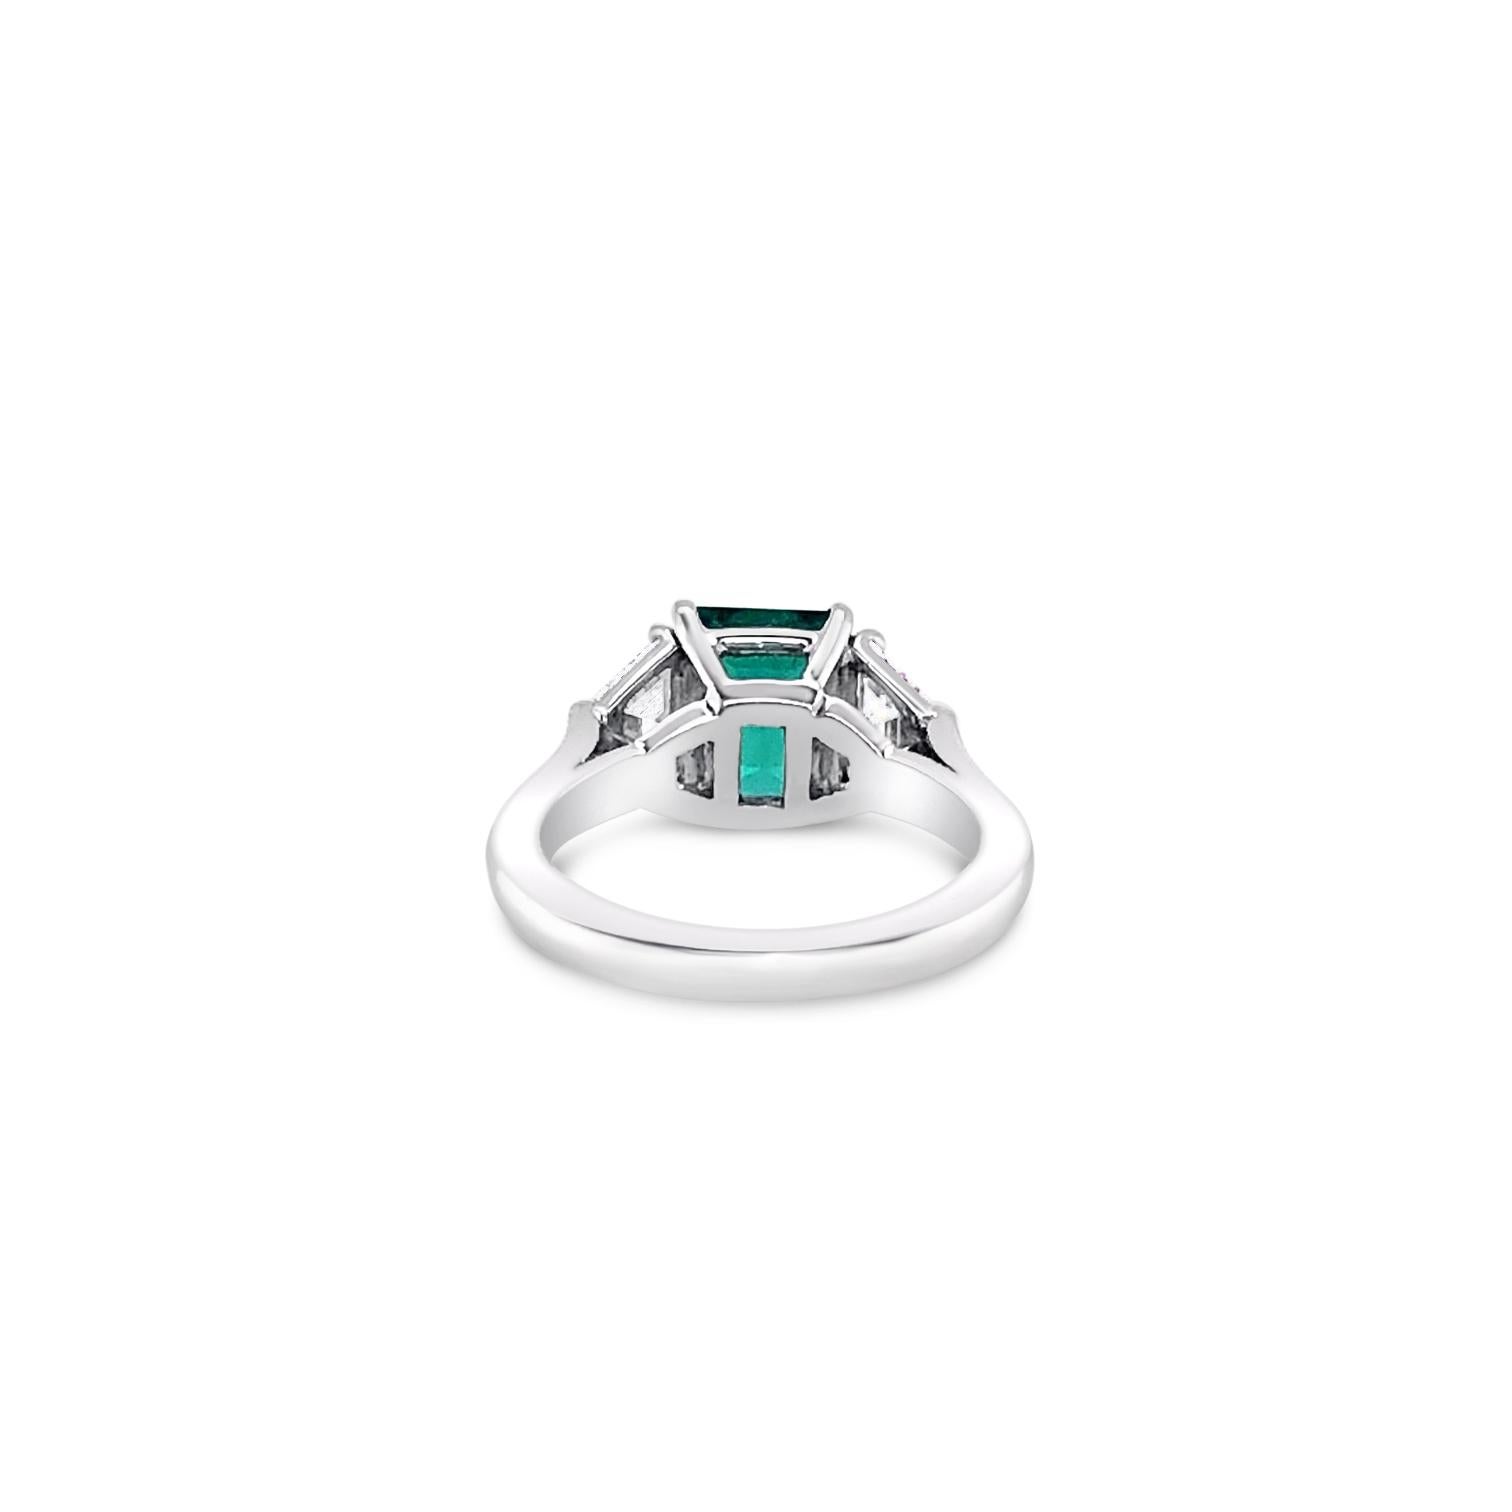 Women's 2.72 Carat Emerald and Diamond Ring in Platinum